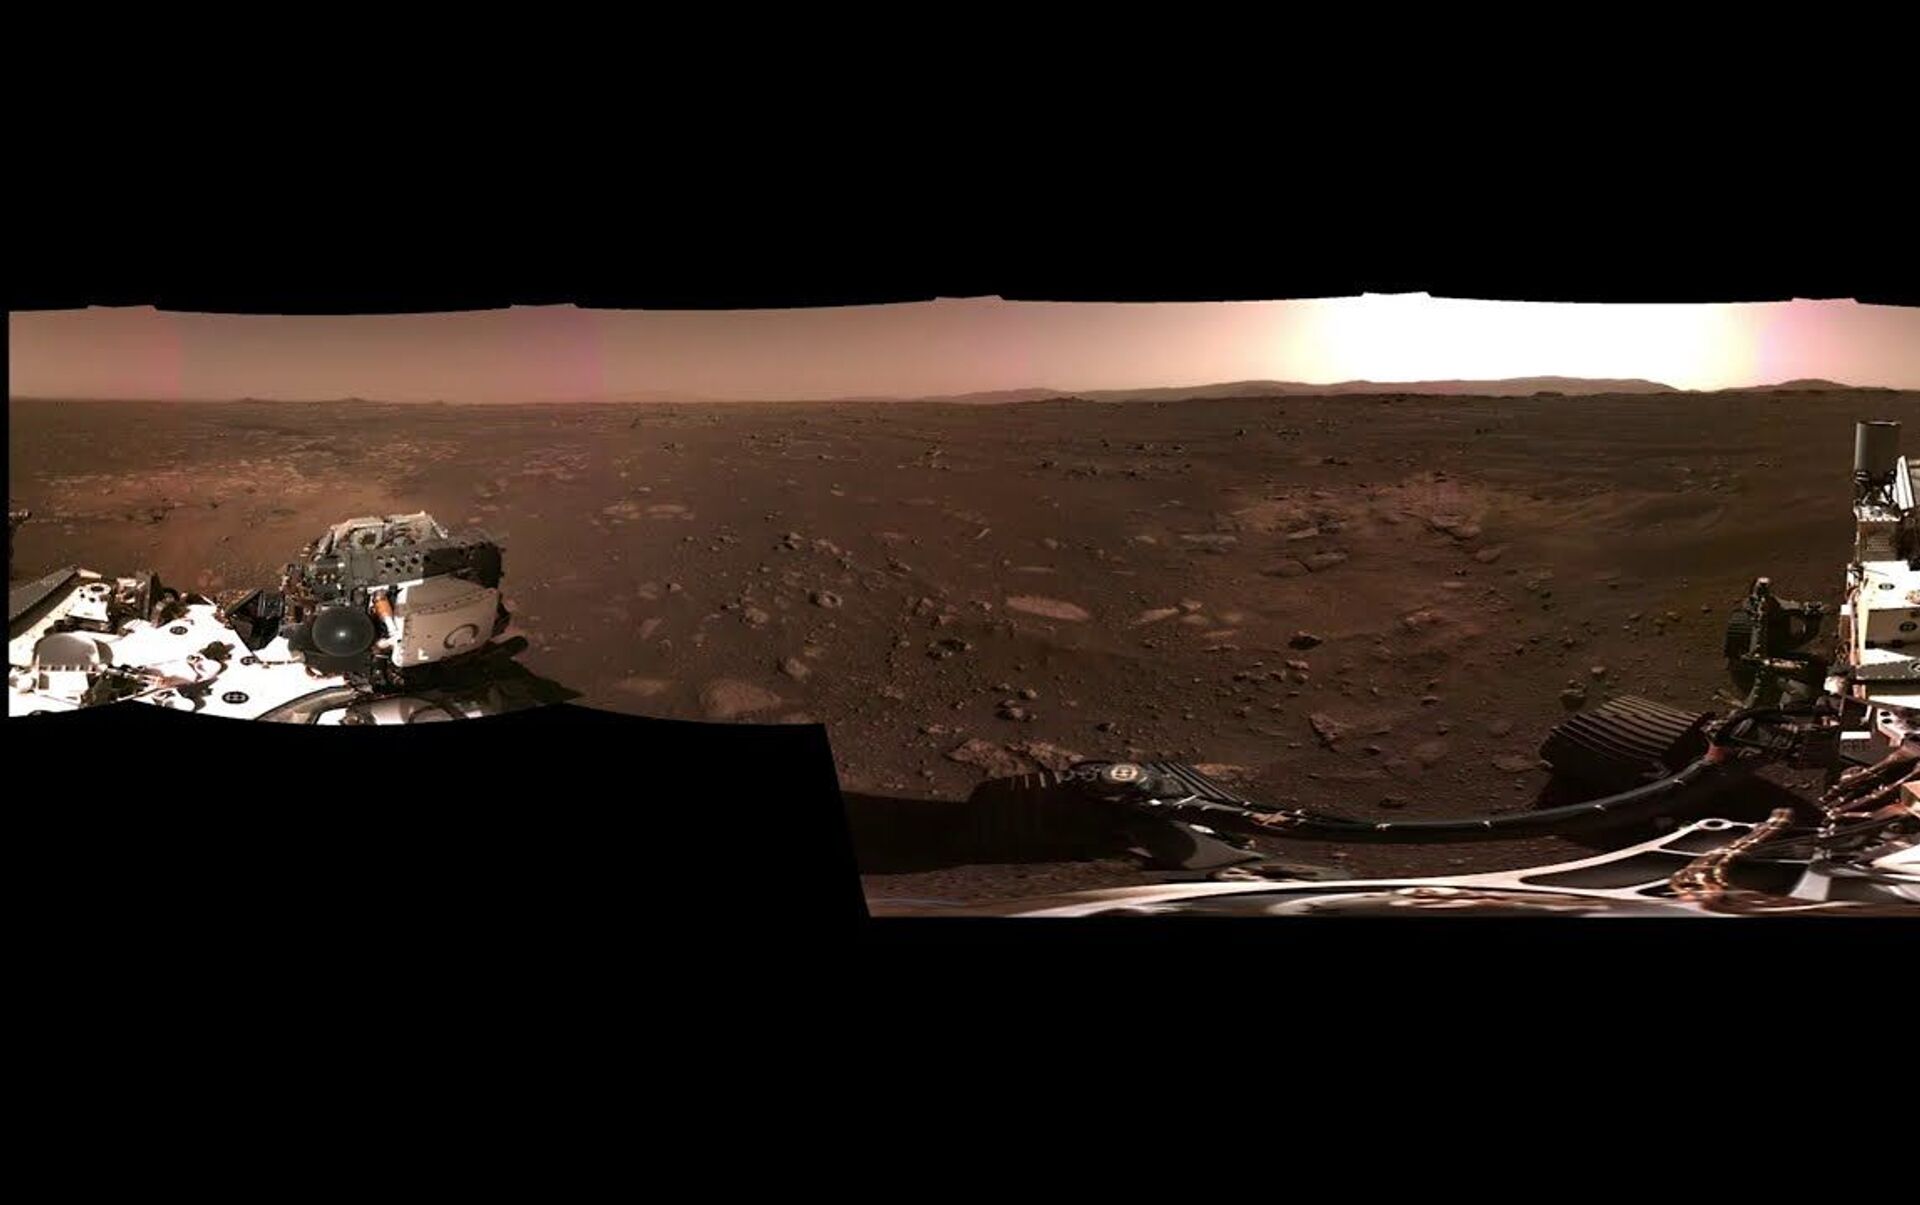 Марсоход perseverance панорамы. Восстановленная панорама Марс-3. Алиса покажи как выглядит Марс 1000 лет назад. Фото сделано наса в день рождения